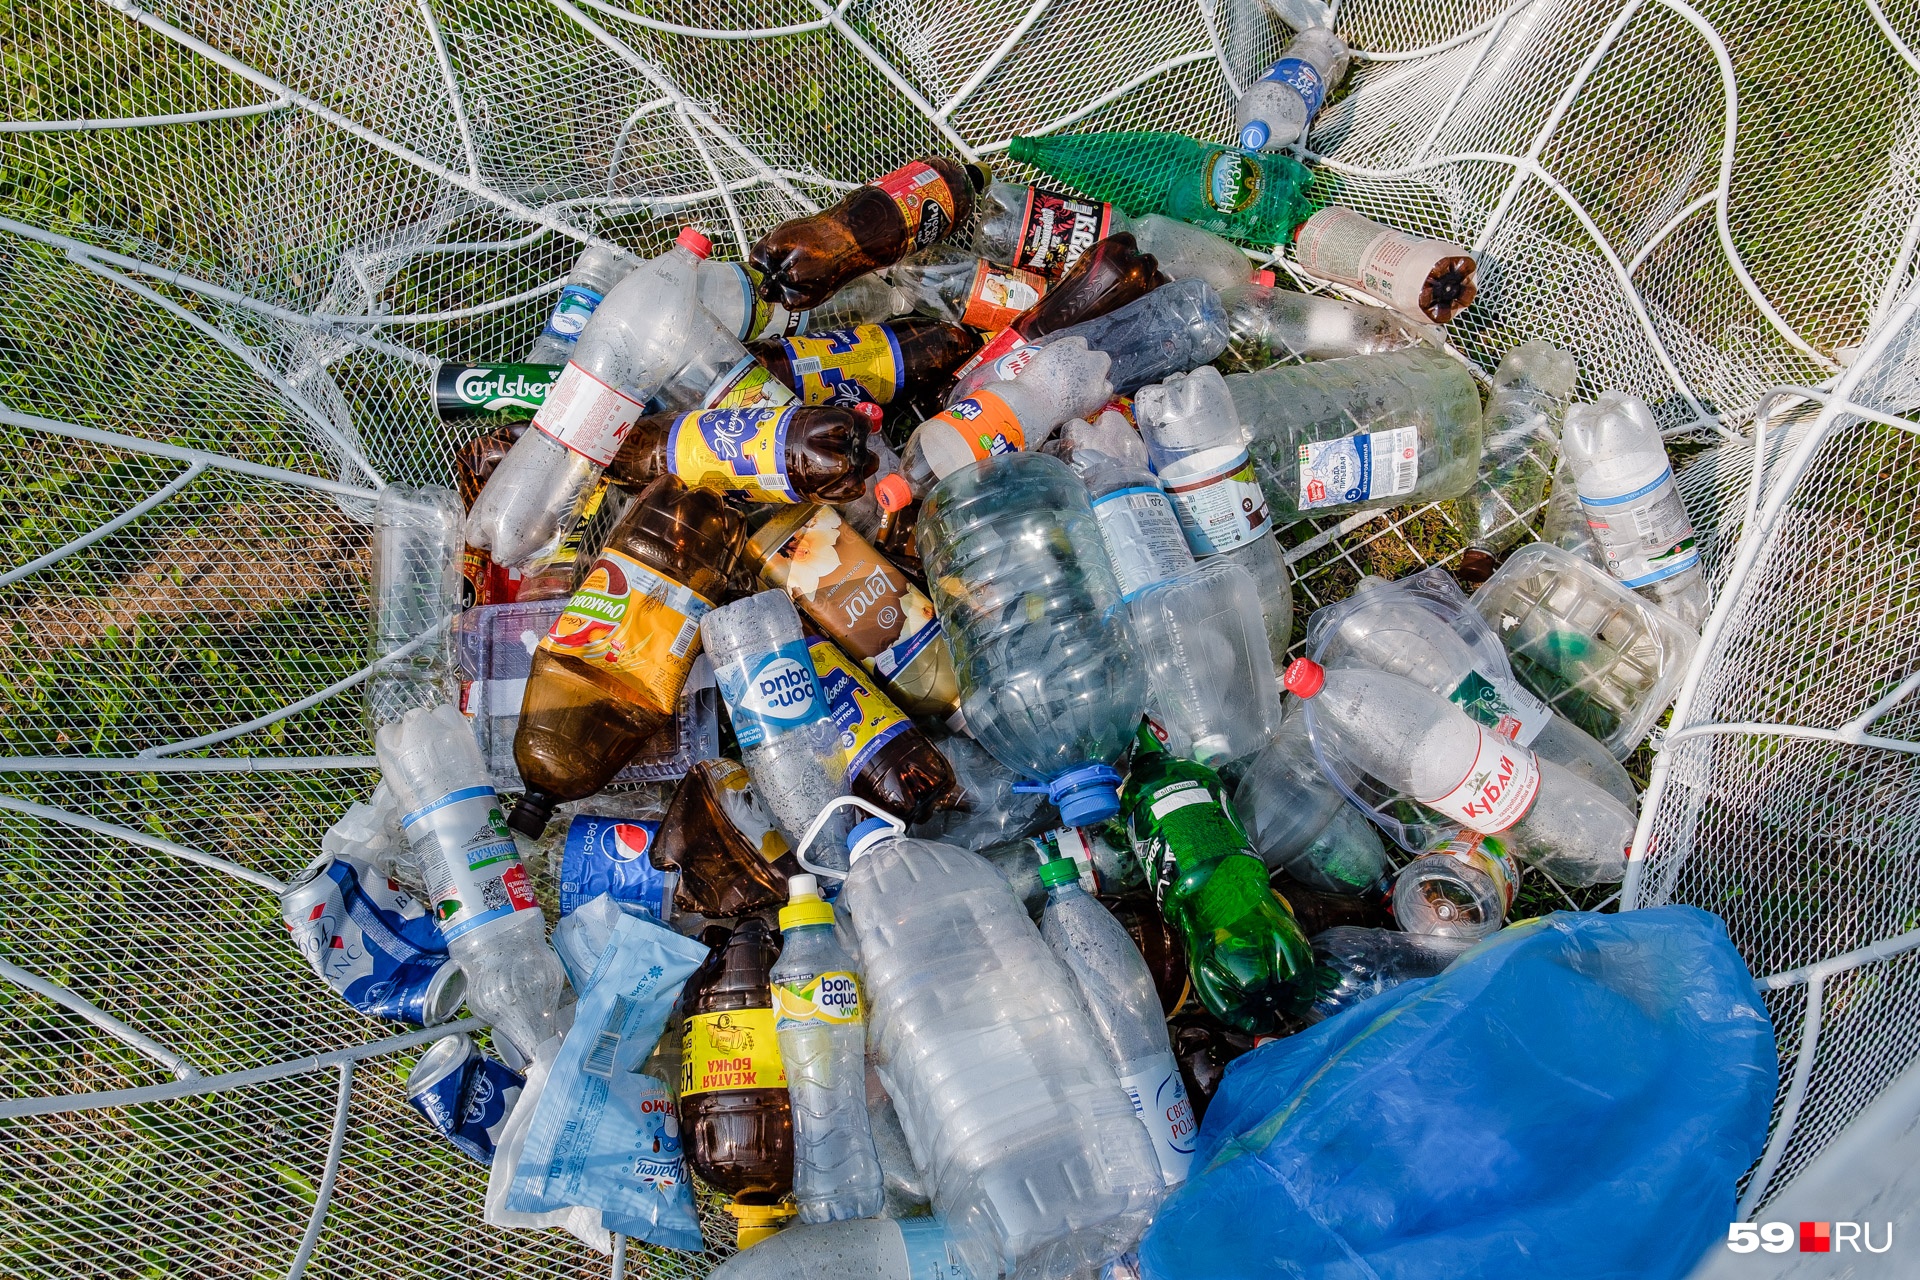 В Перми начали ставить новые контейнеры для мусора на переработку. А что вообще можно перерабатывать?